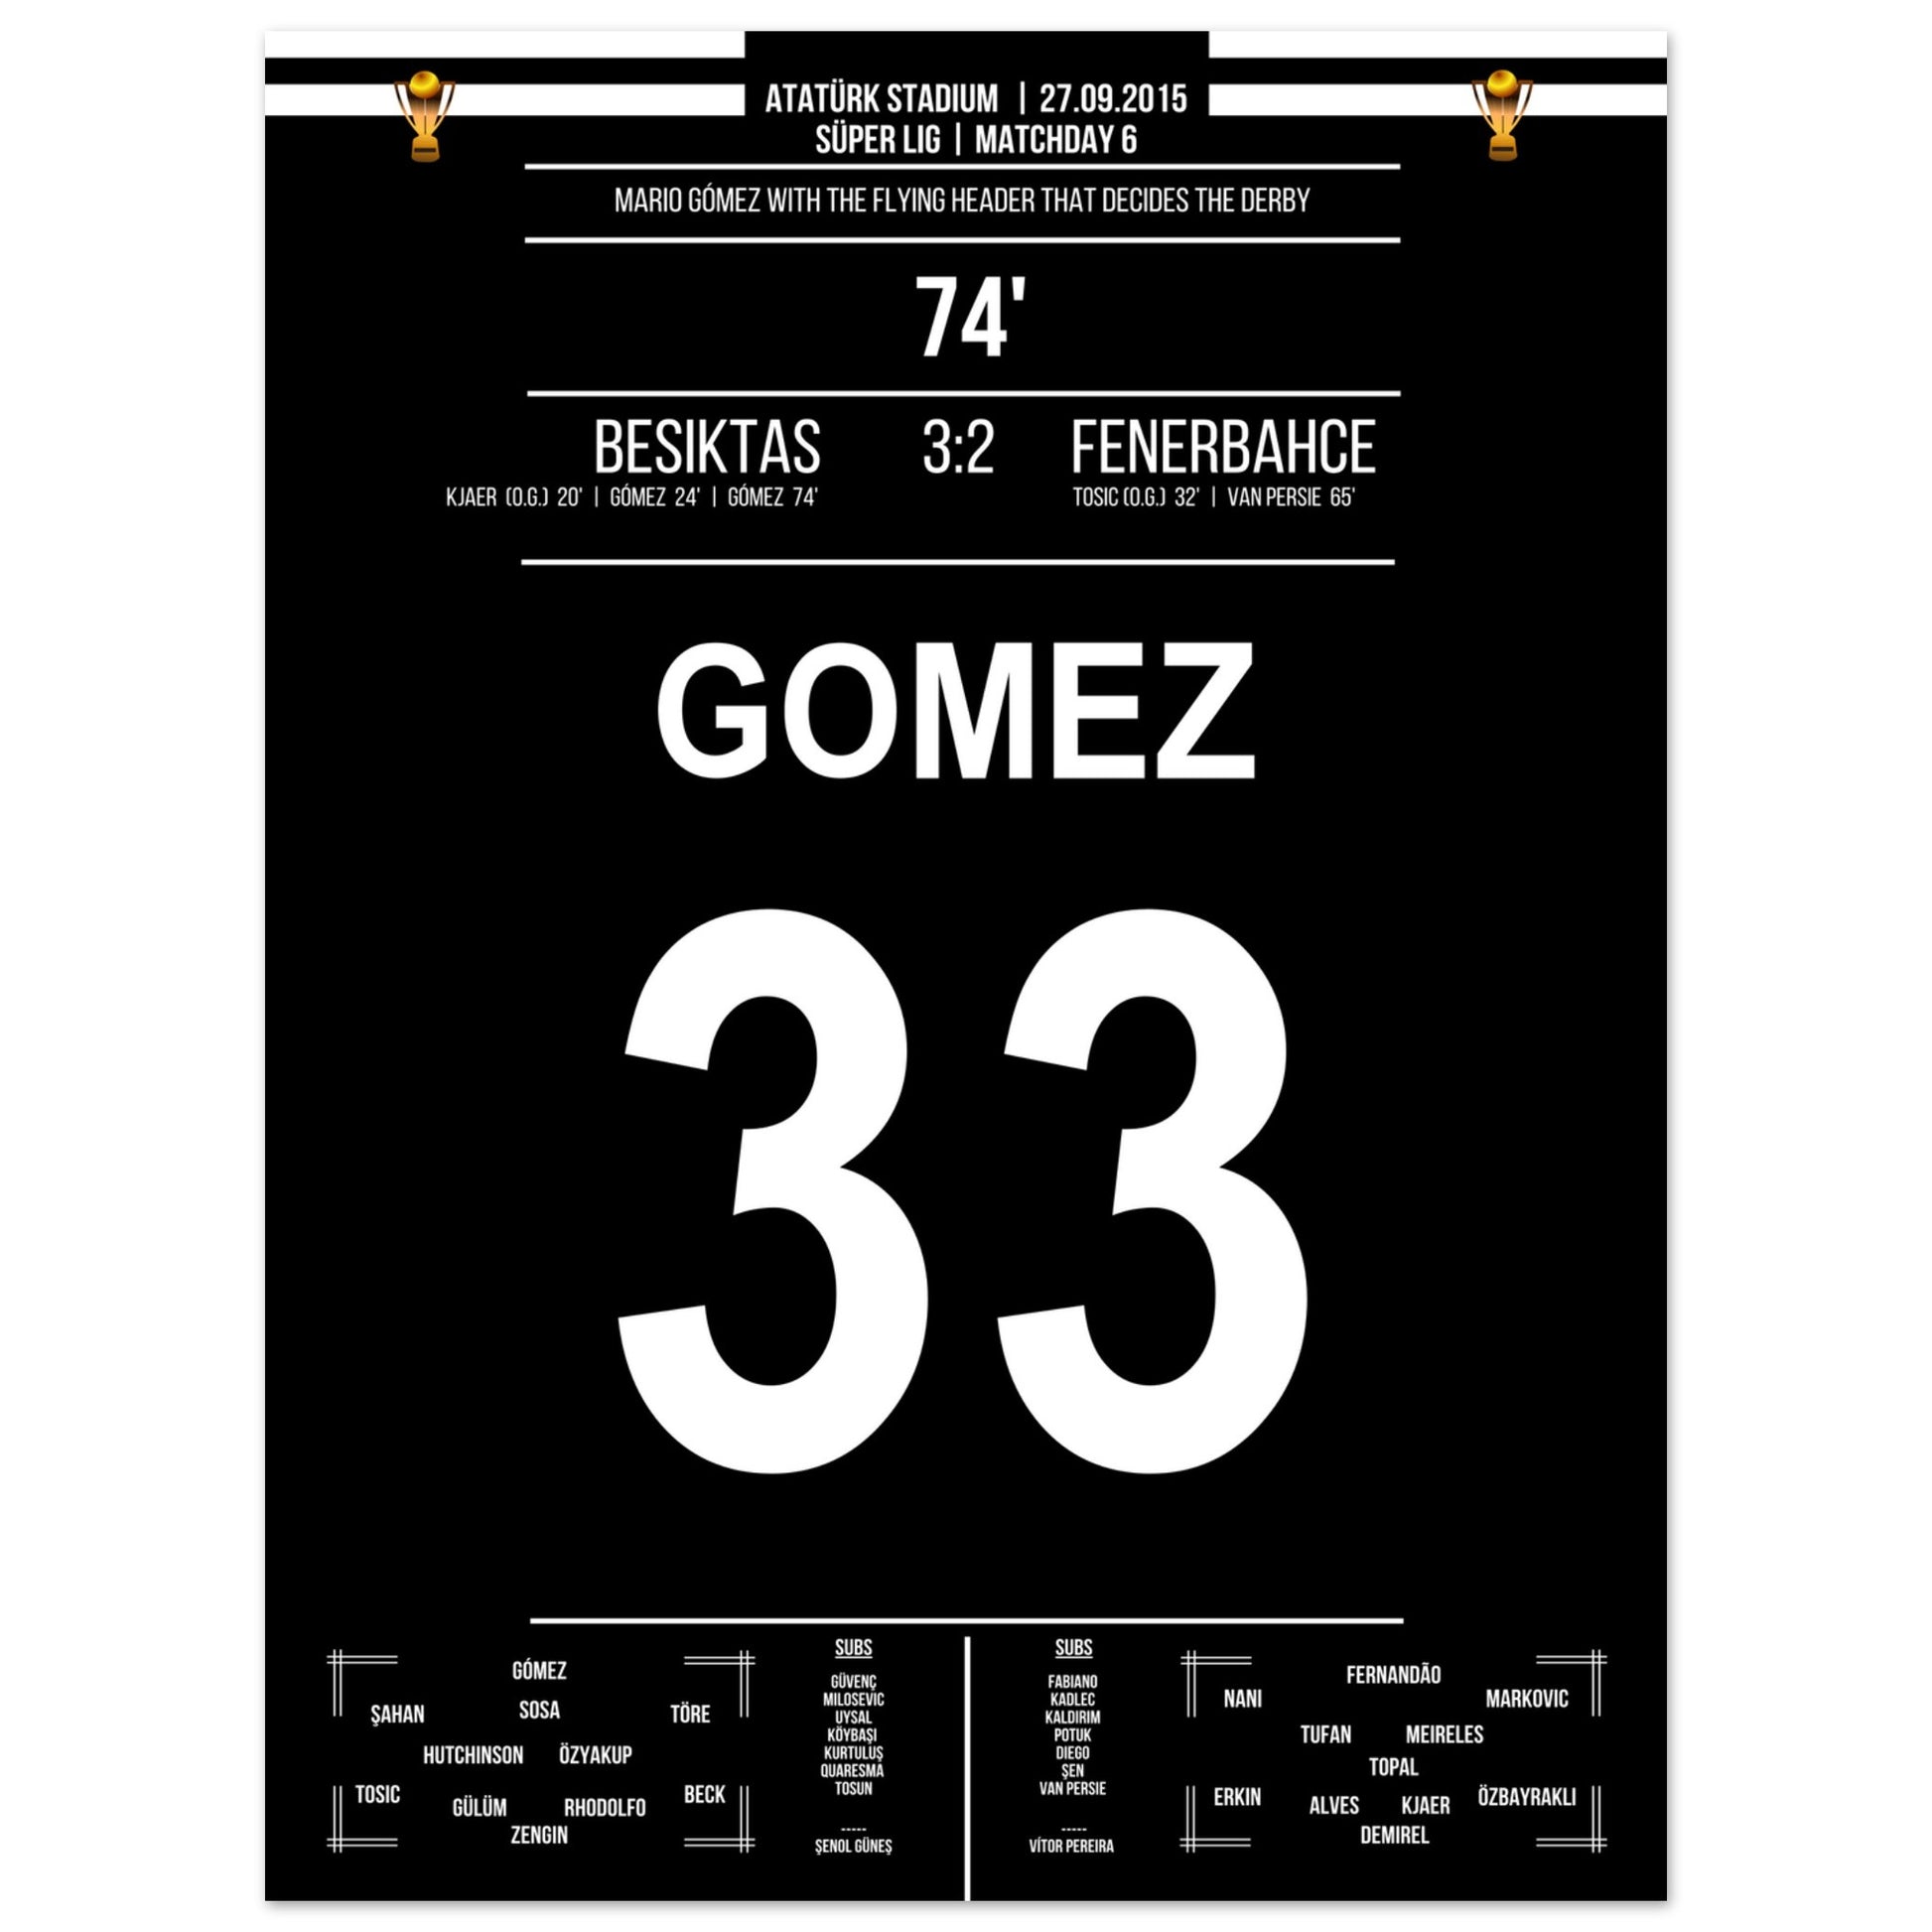 Mario Gomez Flugkopfball beim Derbysieg gegen Fenerbahce 2015 45x60-cm-18x24-Ohne-Rahmen